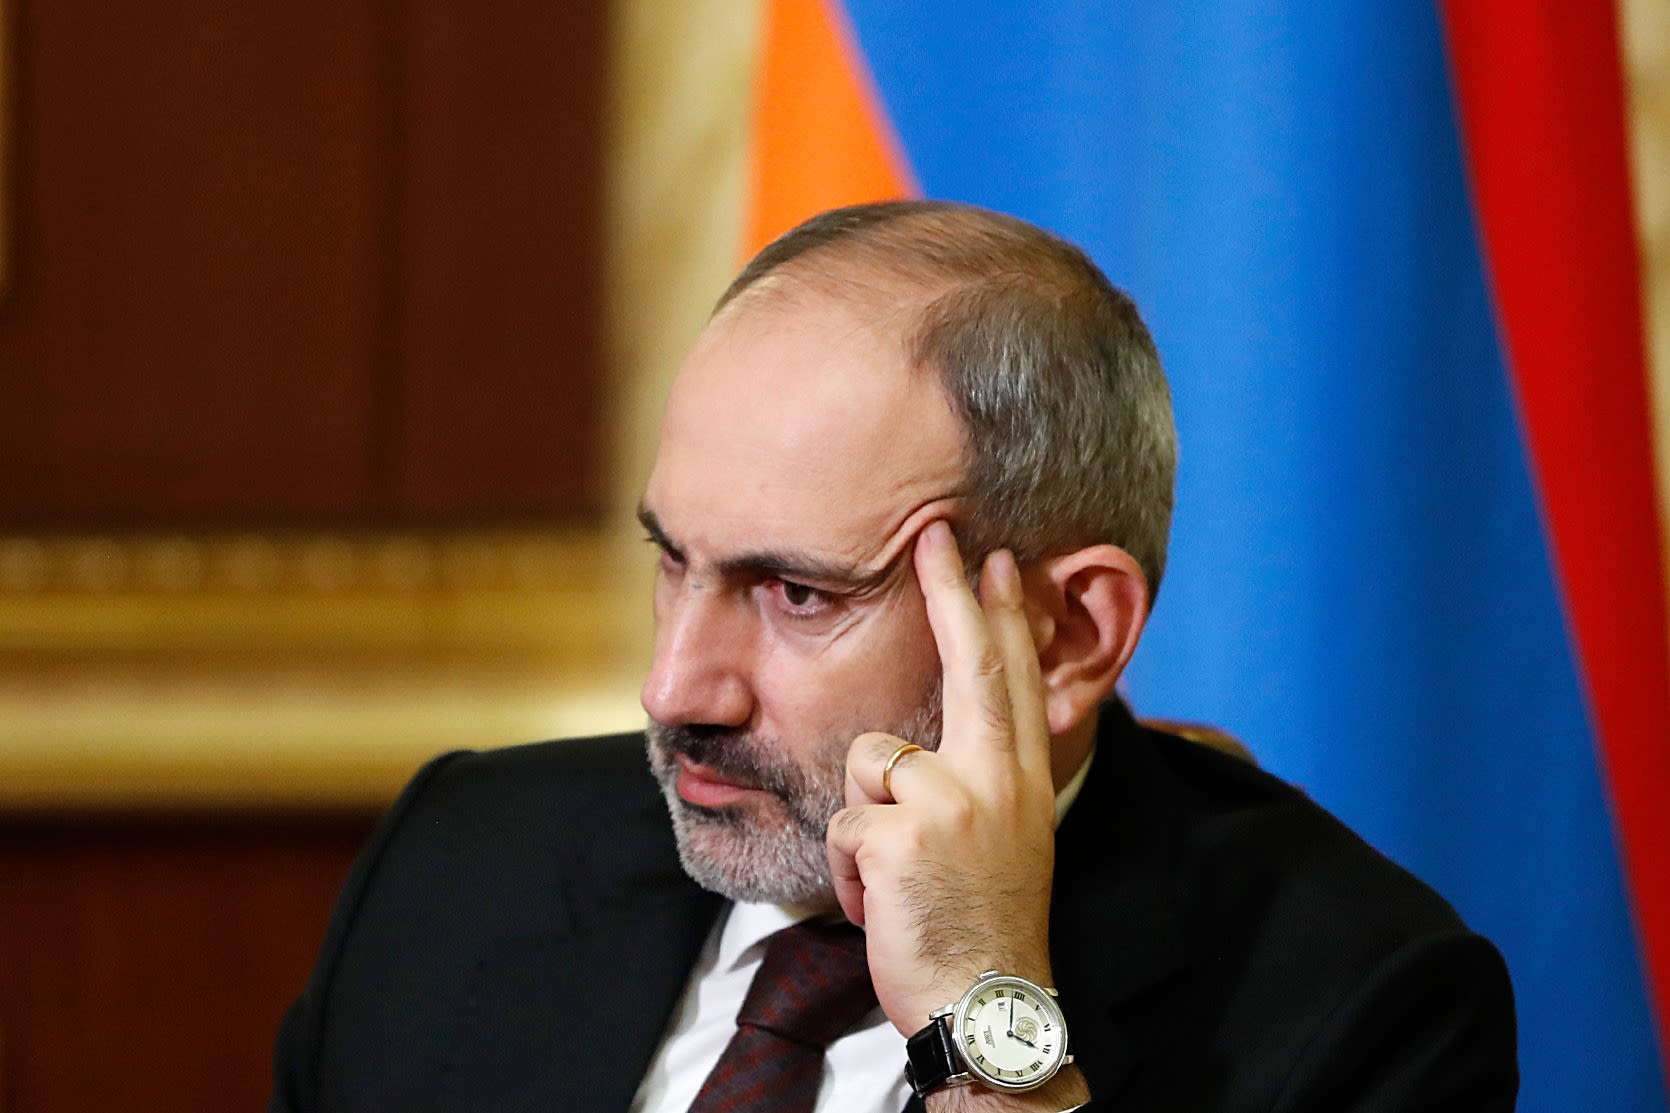 le papier d'armenie - Karambolage - Regarder l'émission complète